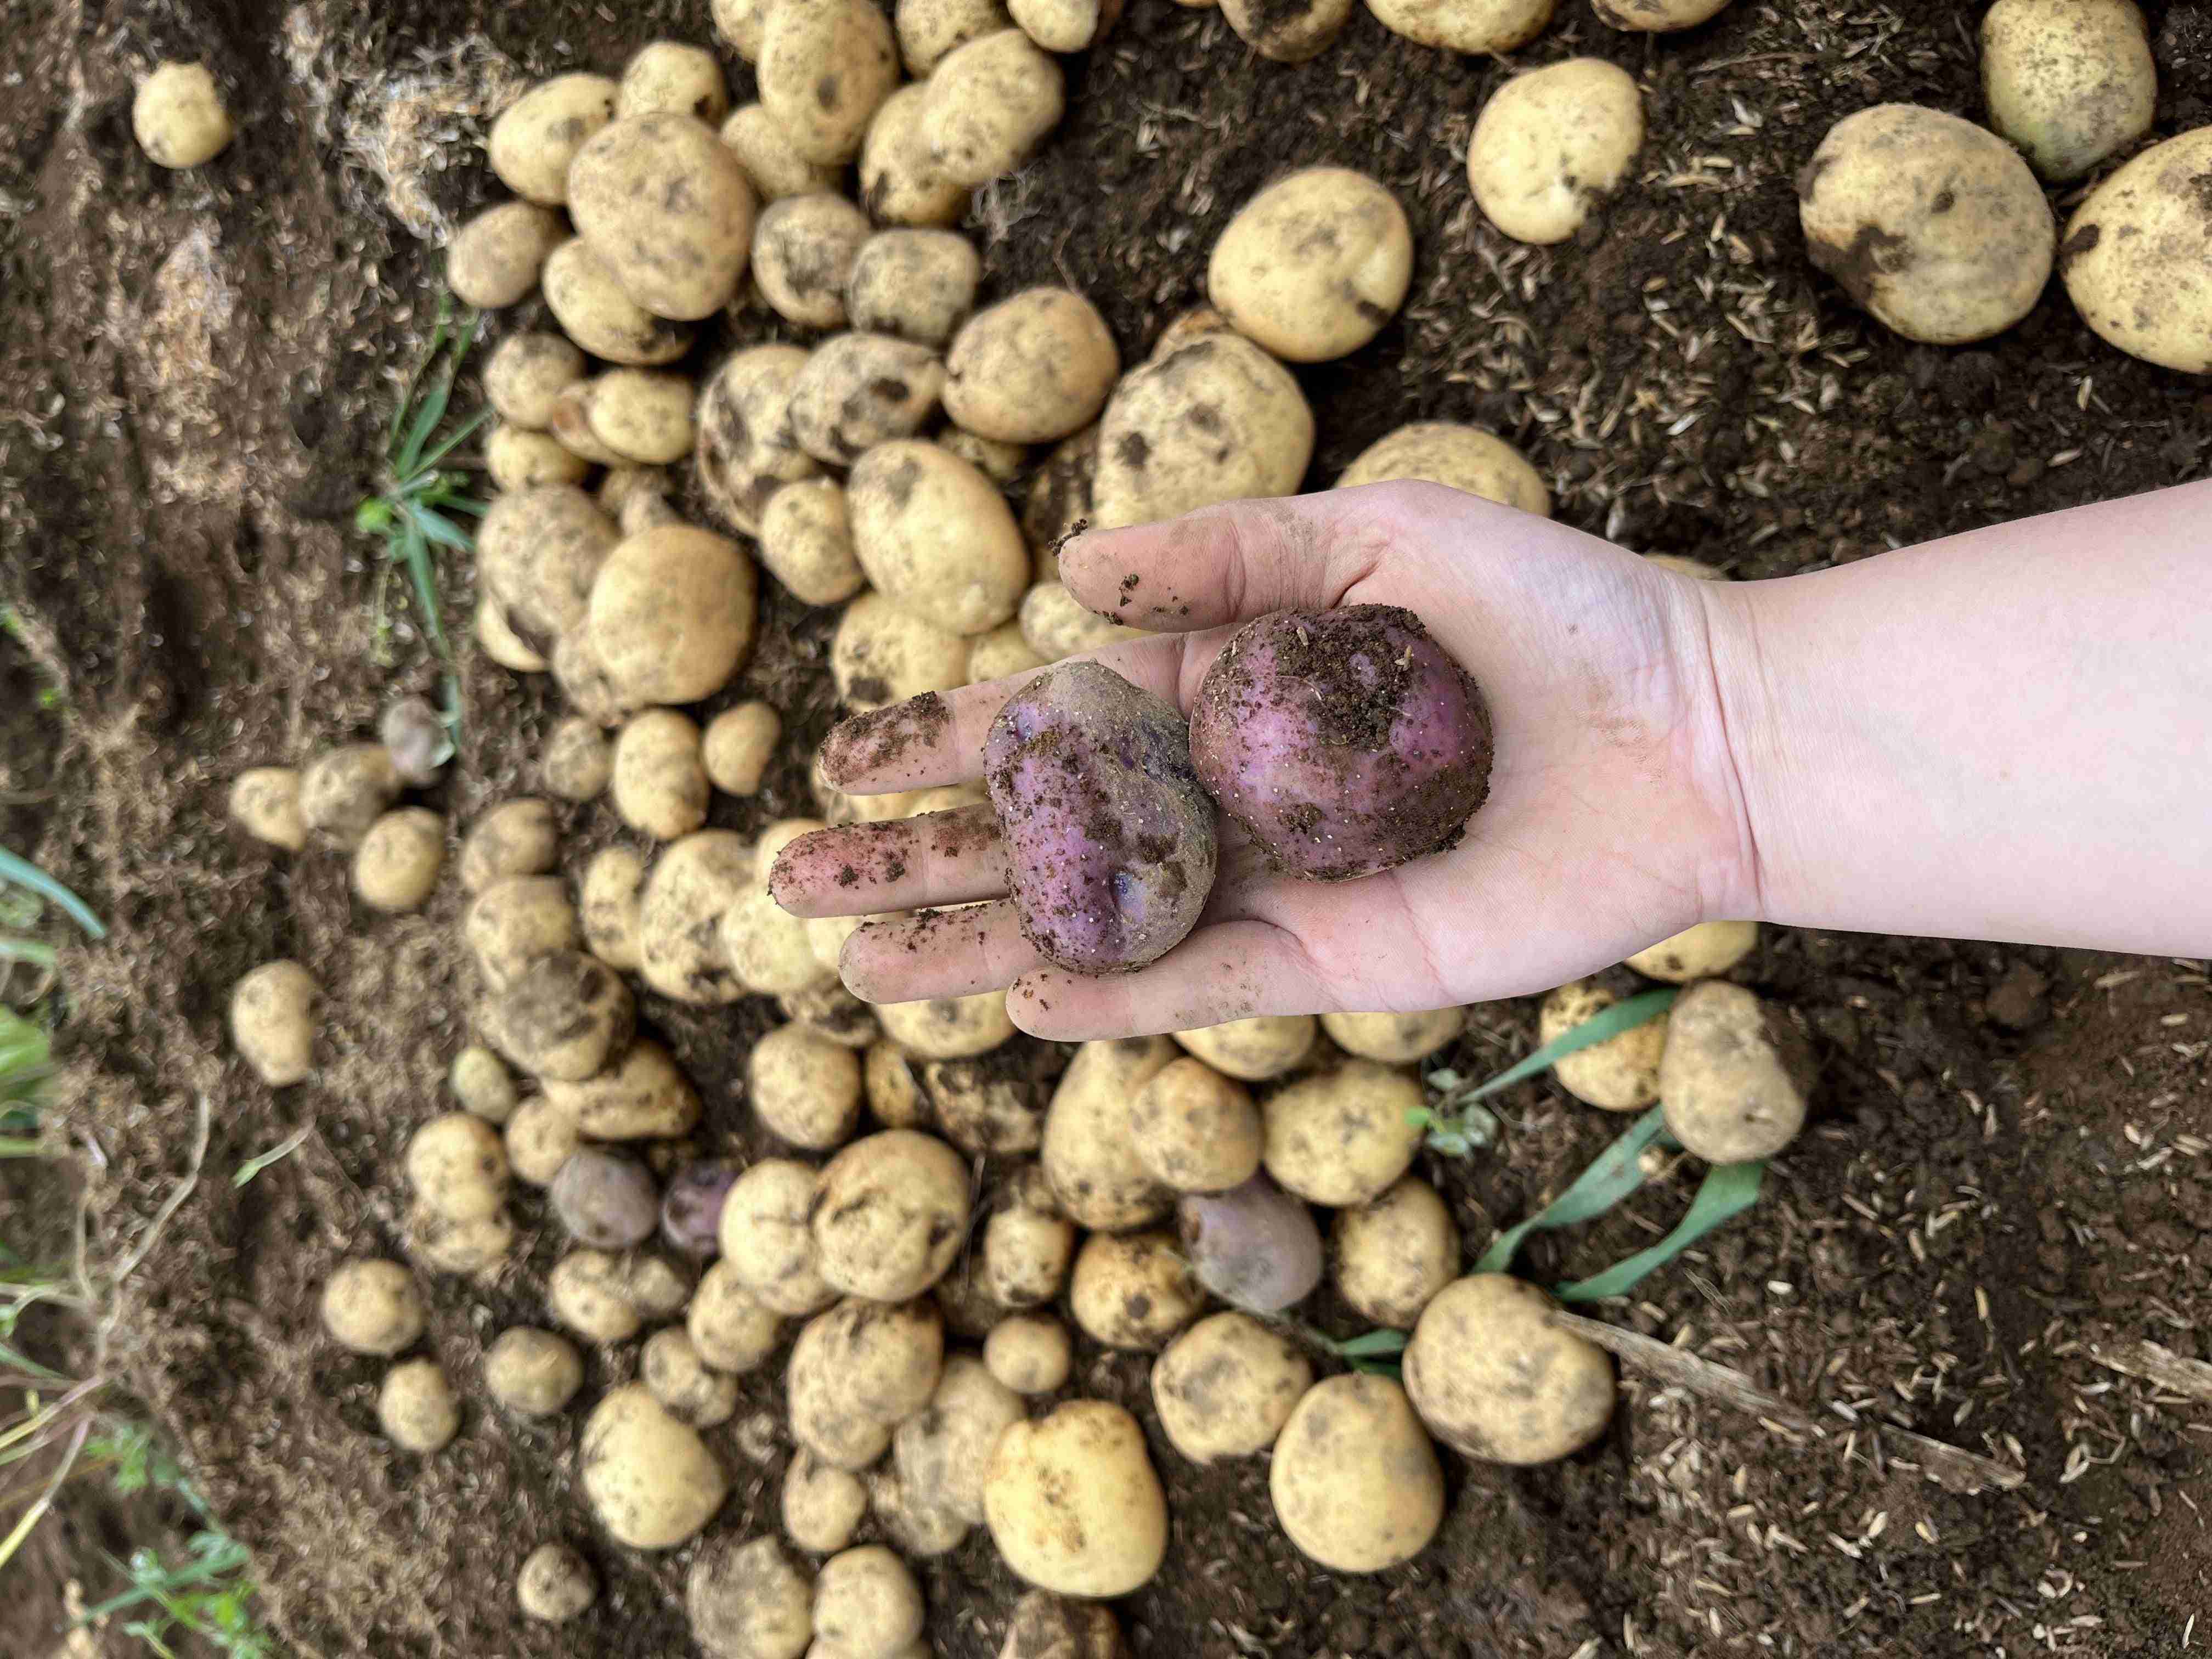 Salah seorang mahasiswa KKN UGM memperlihatkan kentang panenannya | Dokumentasi pribadi